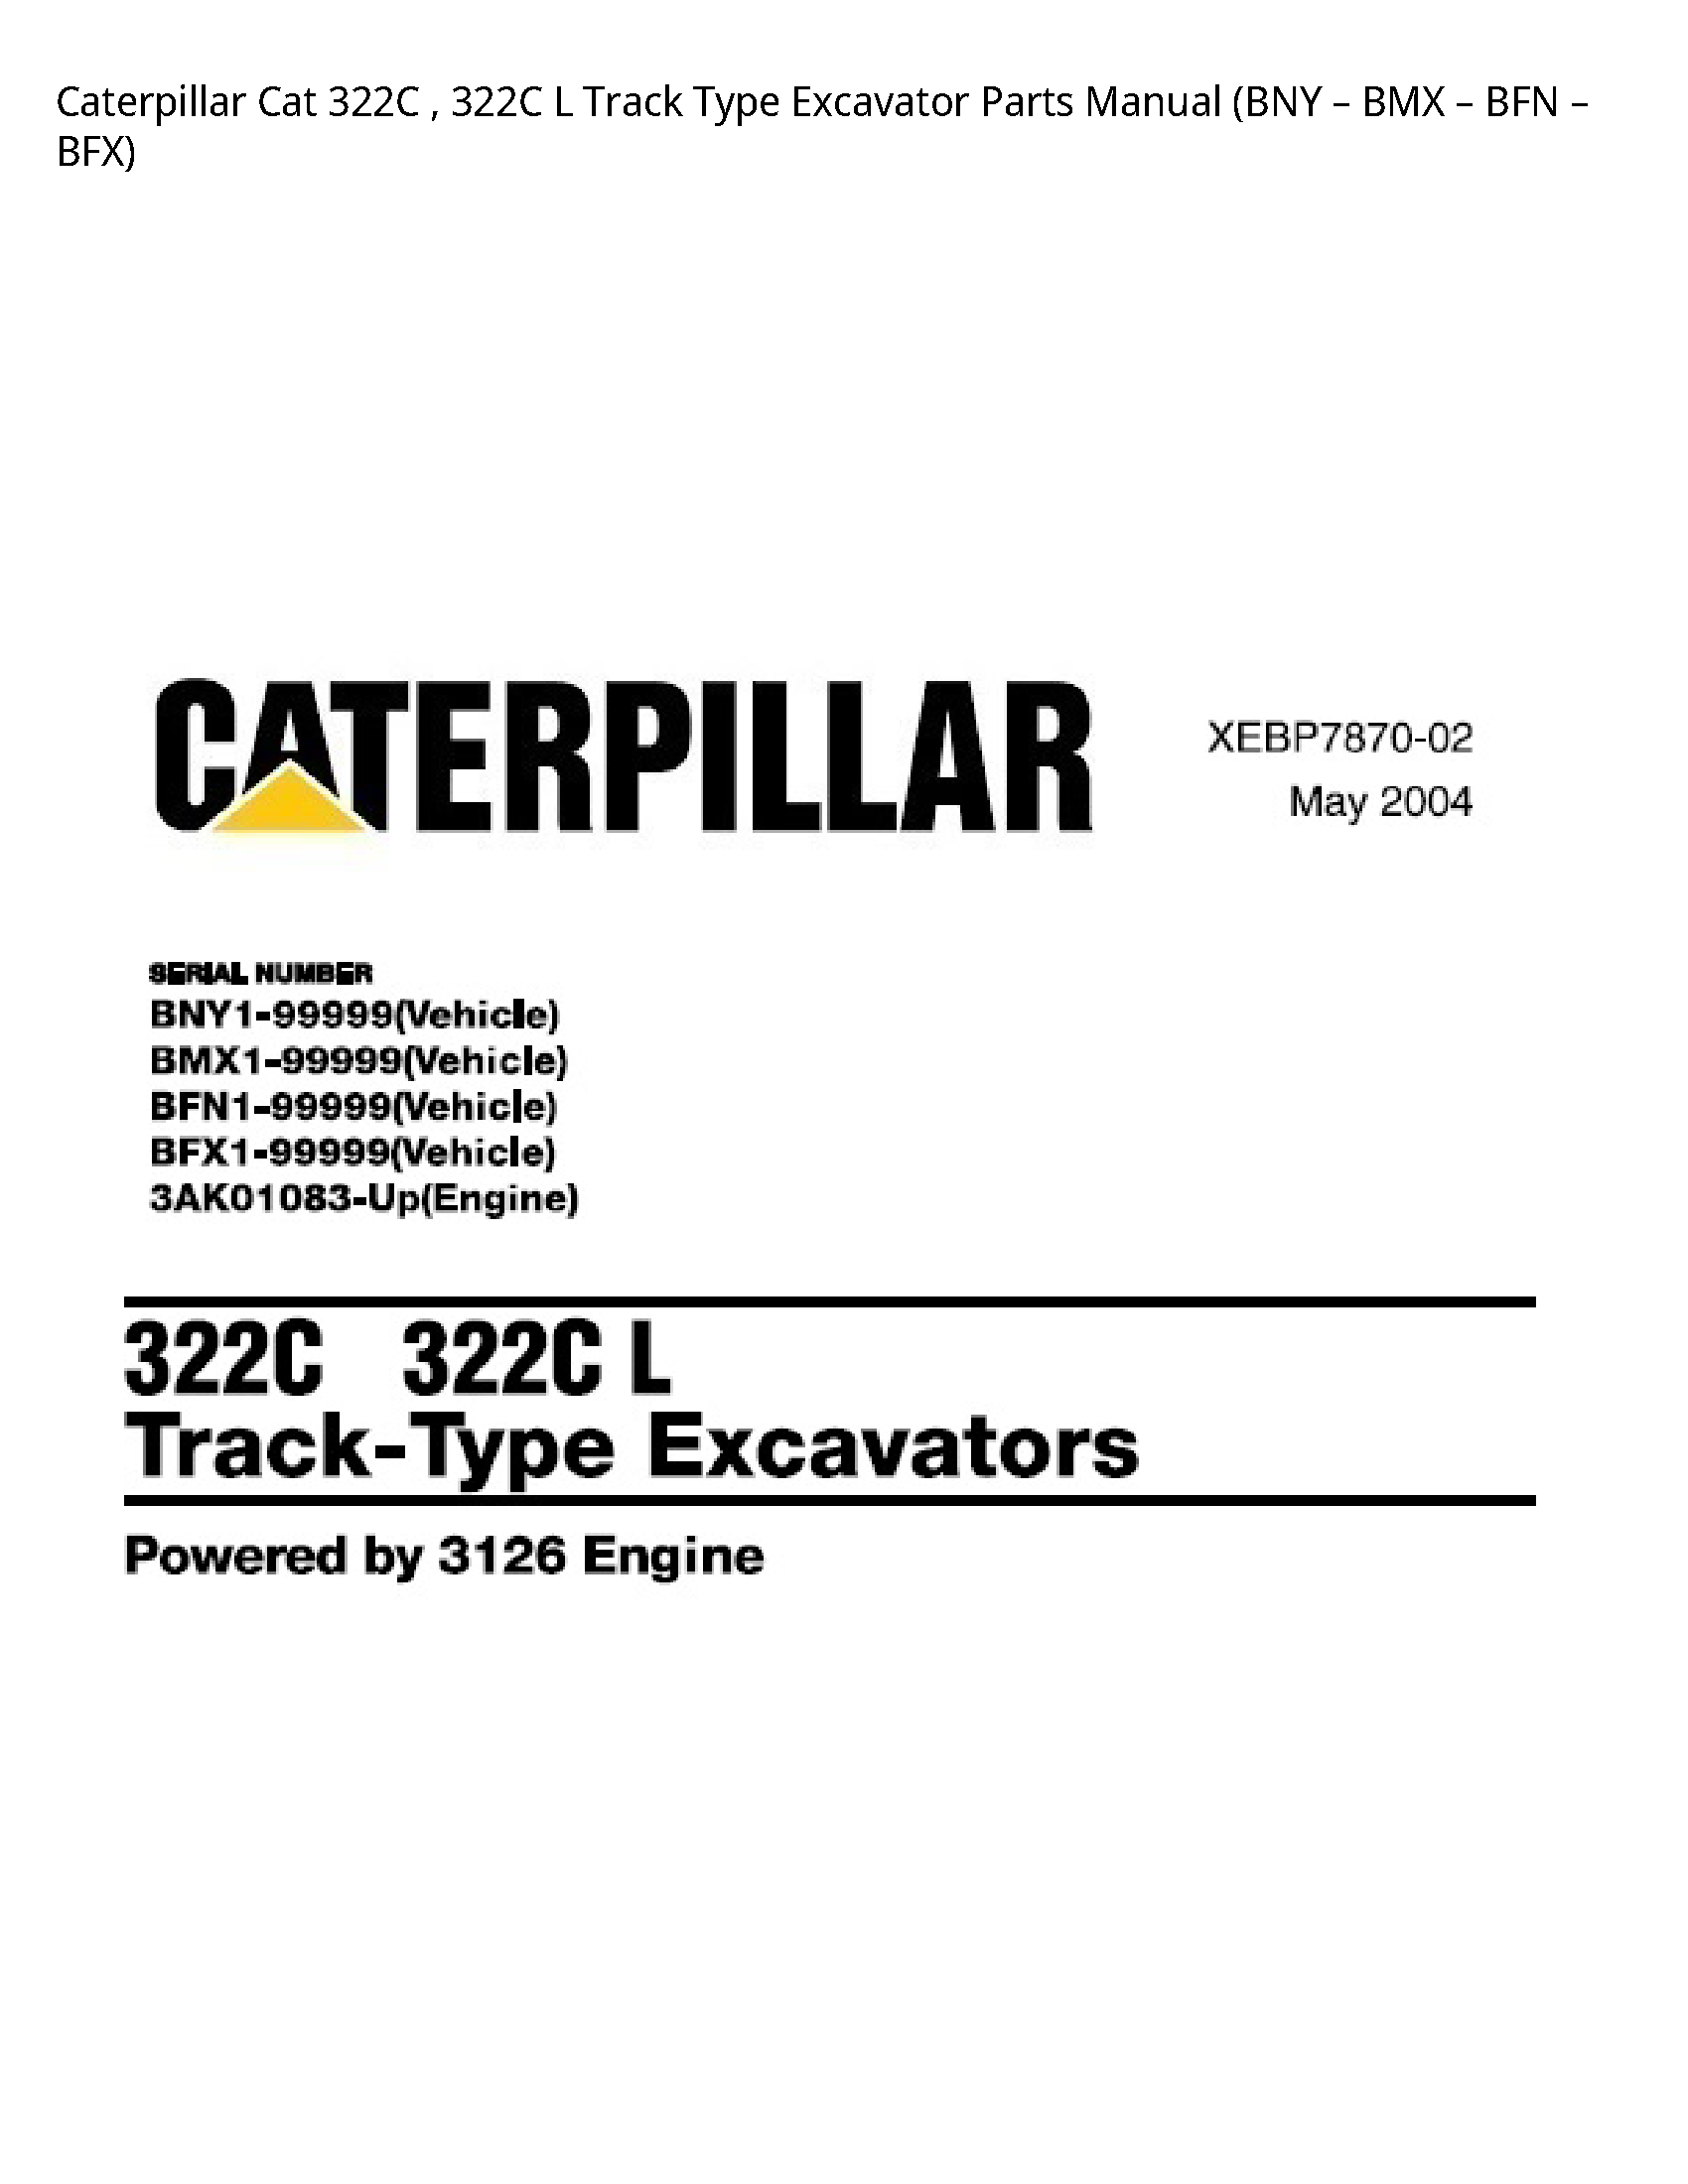 Caterpillar 322C Cat Track Type Excavator Parts manual